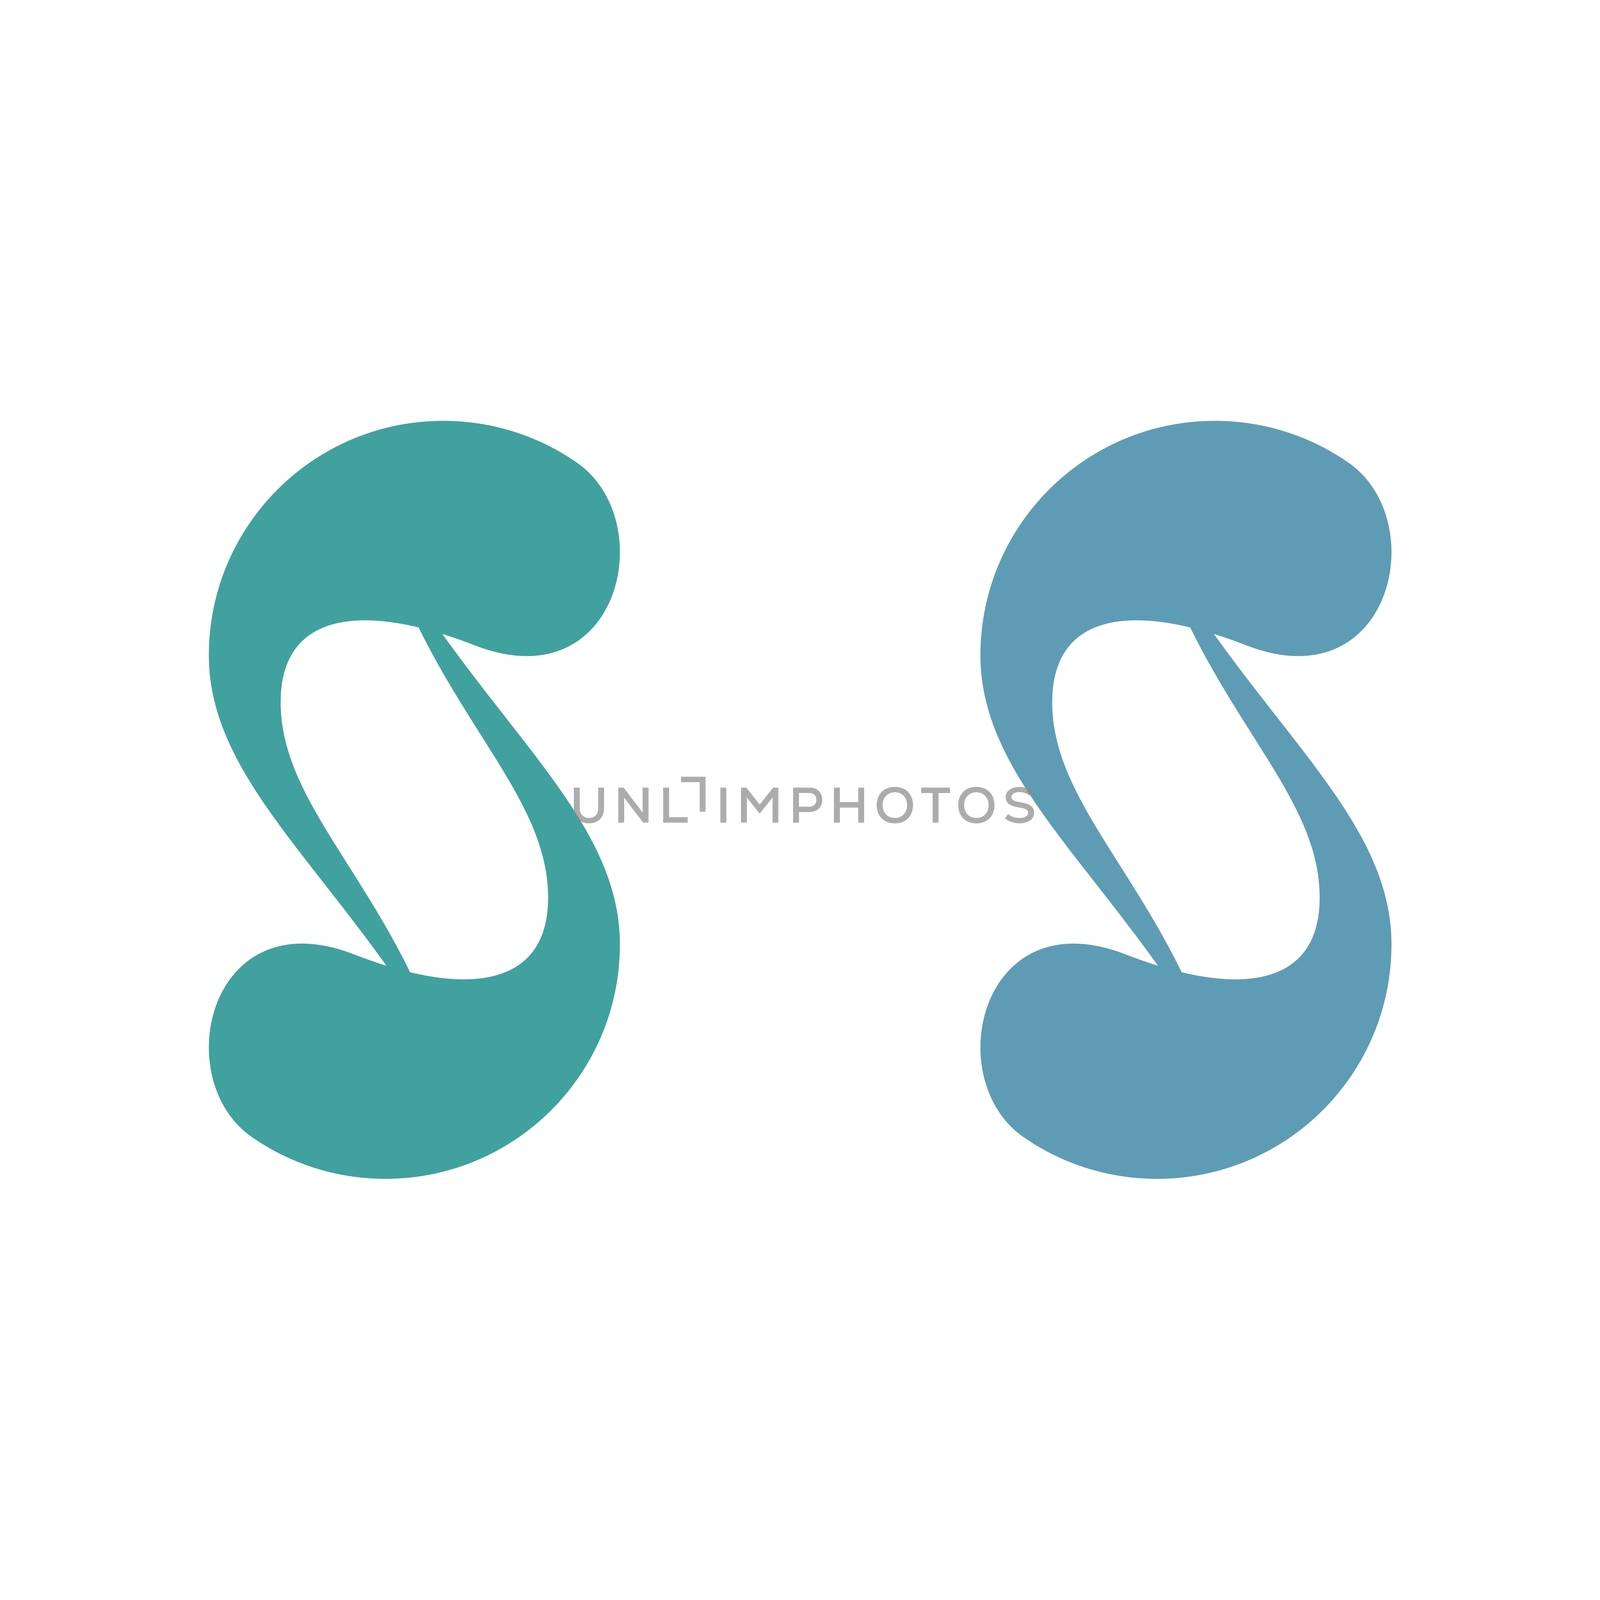 S Letter Ornamental Logo Template Illustration Design. Vector EPS 10.